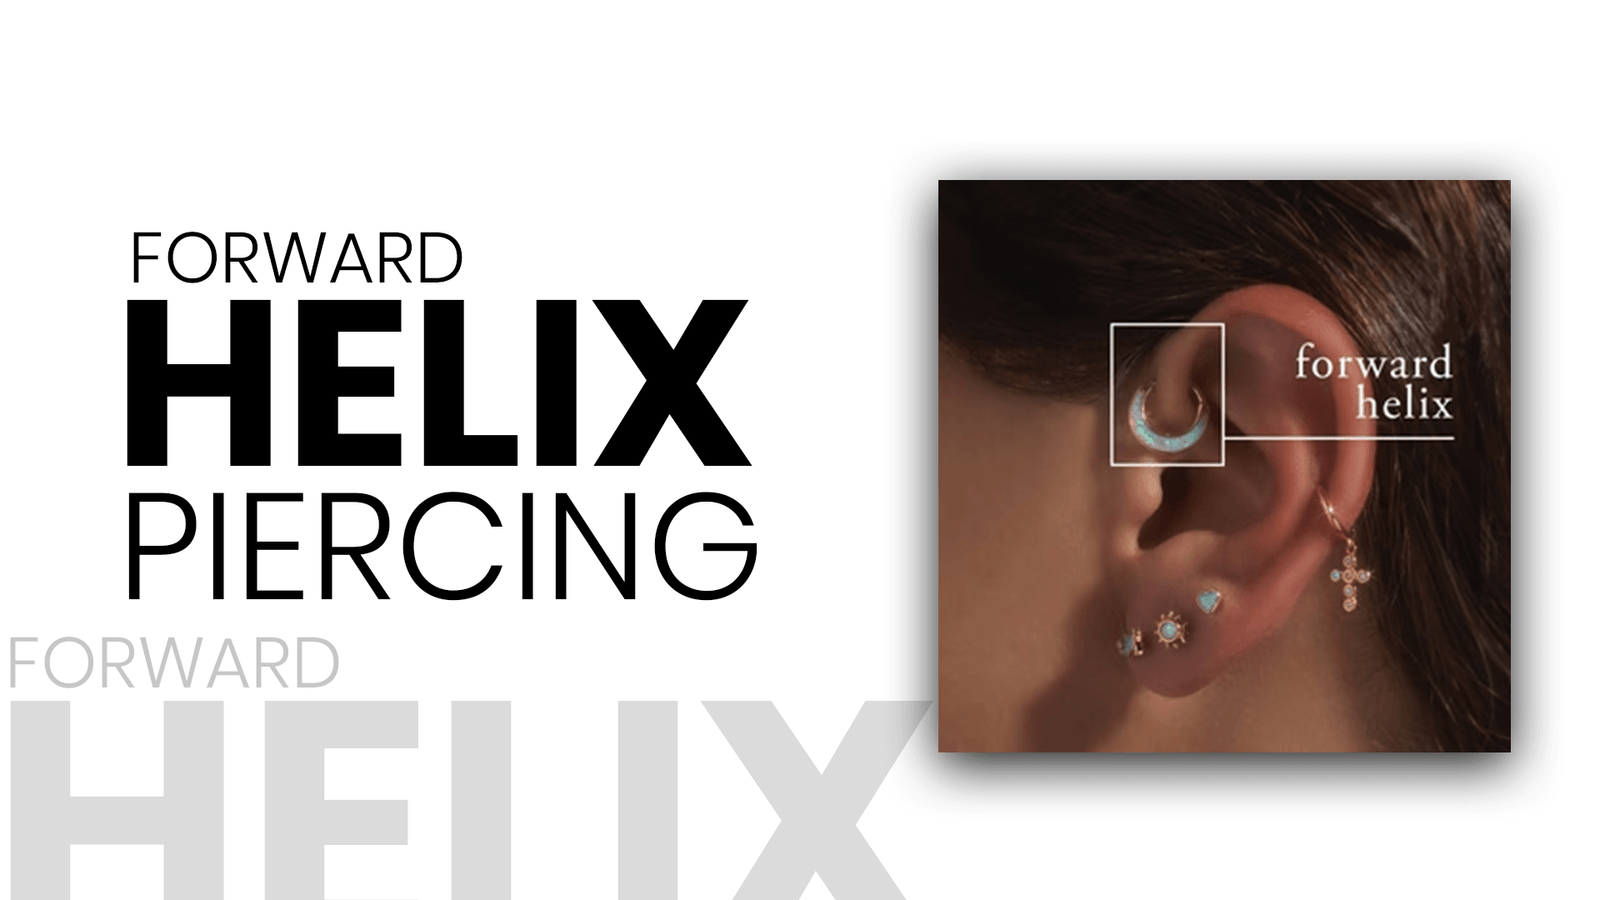 Forward Helix piercing